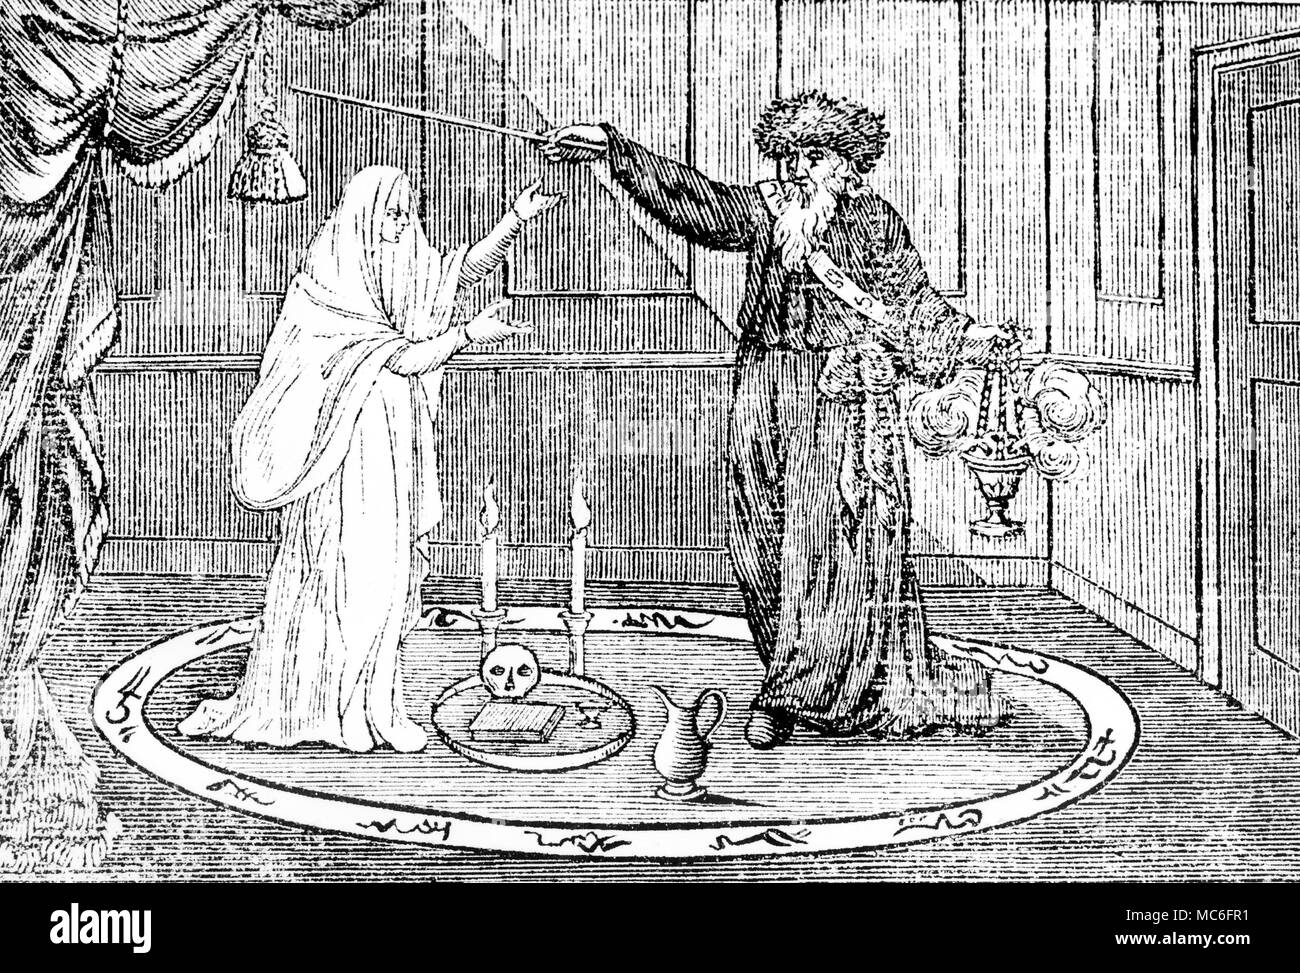 Preuve spectrale a toujours été liée à l'activité du divertissement, de sorte que les premières séances ont été un peu plus d'expériences de divertissement' pour ceux qui les fréquentent. Ce début du 19ème siècle montre le magicien de woodengraving Philipsthal performing 'Phantasmagoria' sur la scène du Lyceum, Londres en 1803 Banque D'Images